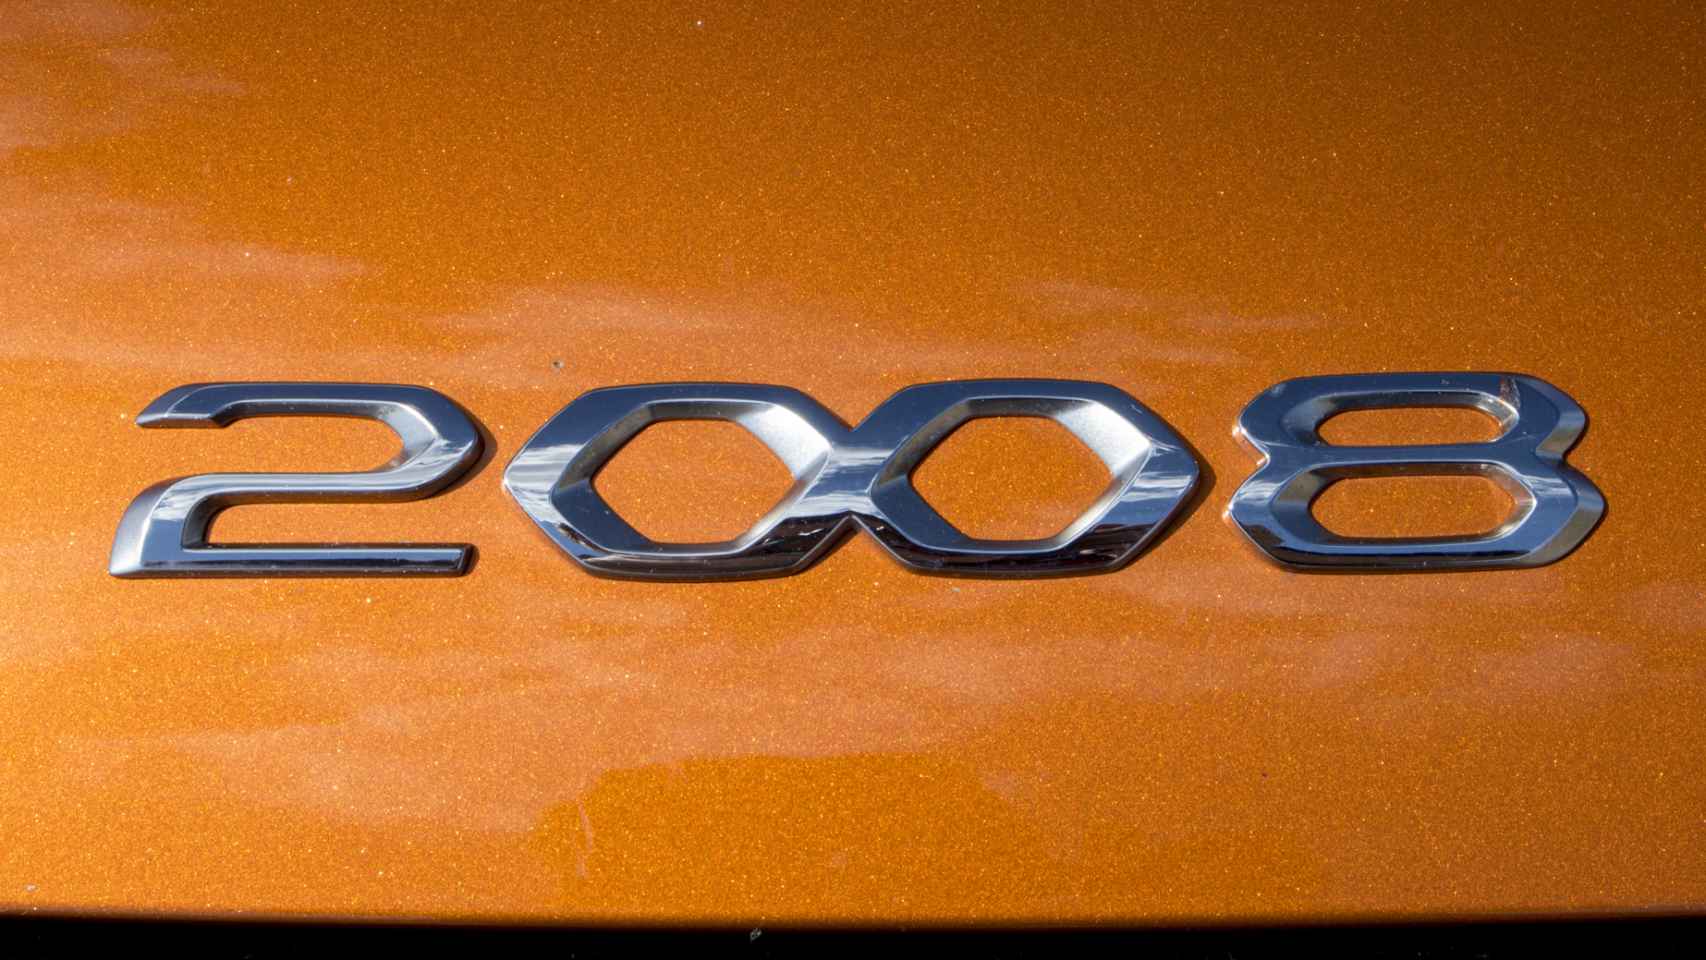 El Peugeot 2008 es de los modelos más vendidos de su segmento.